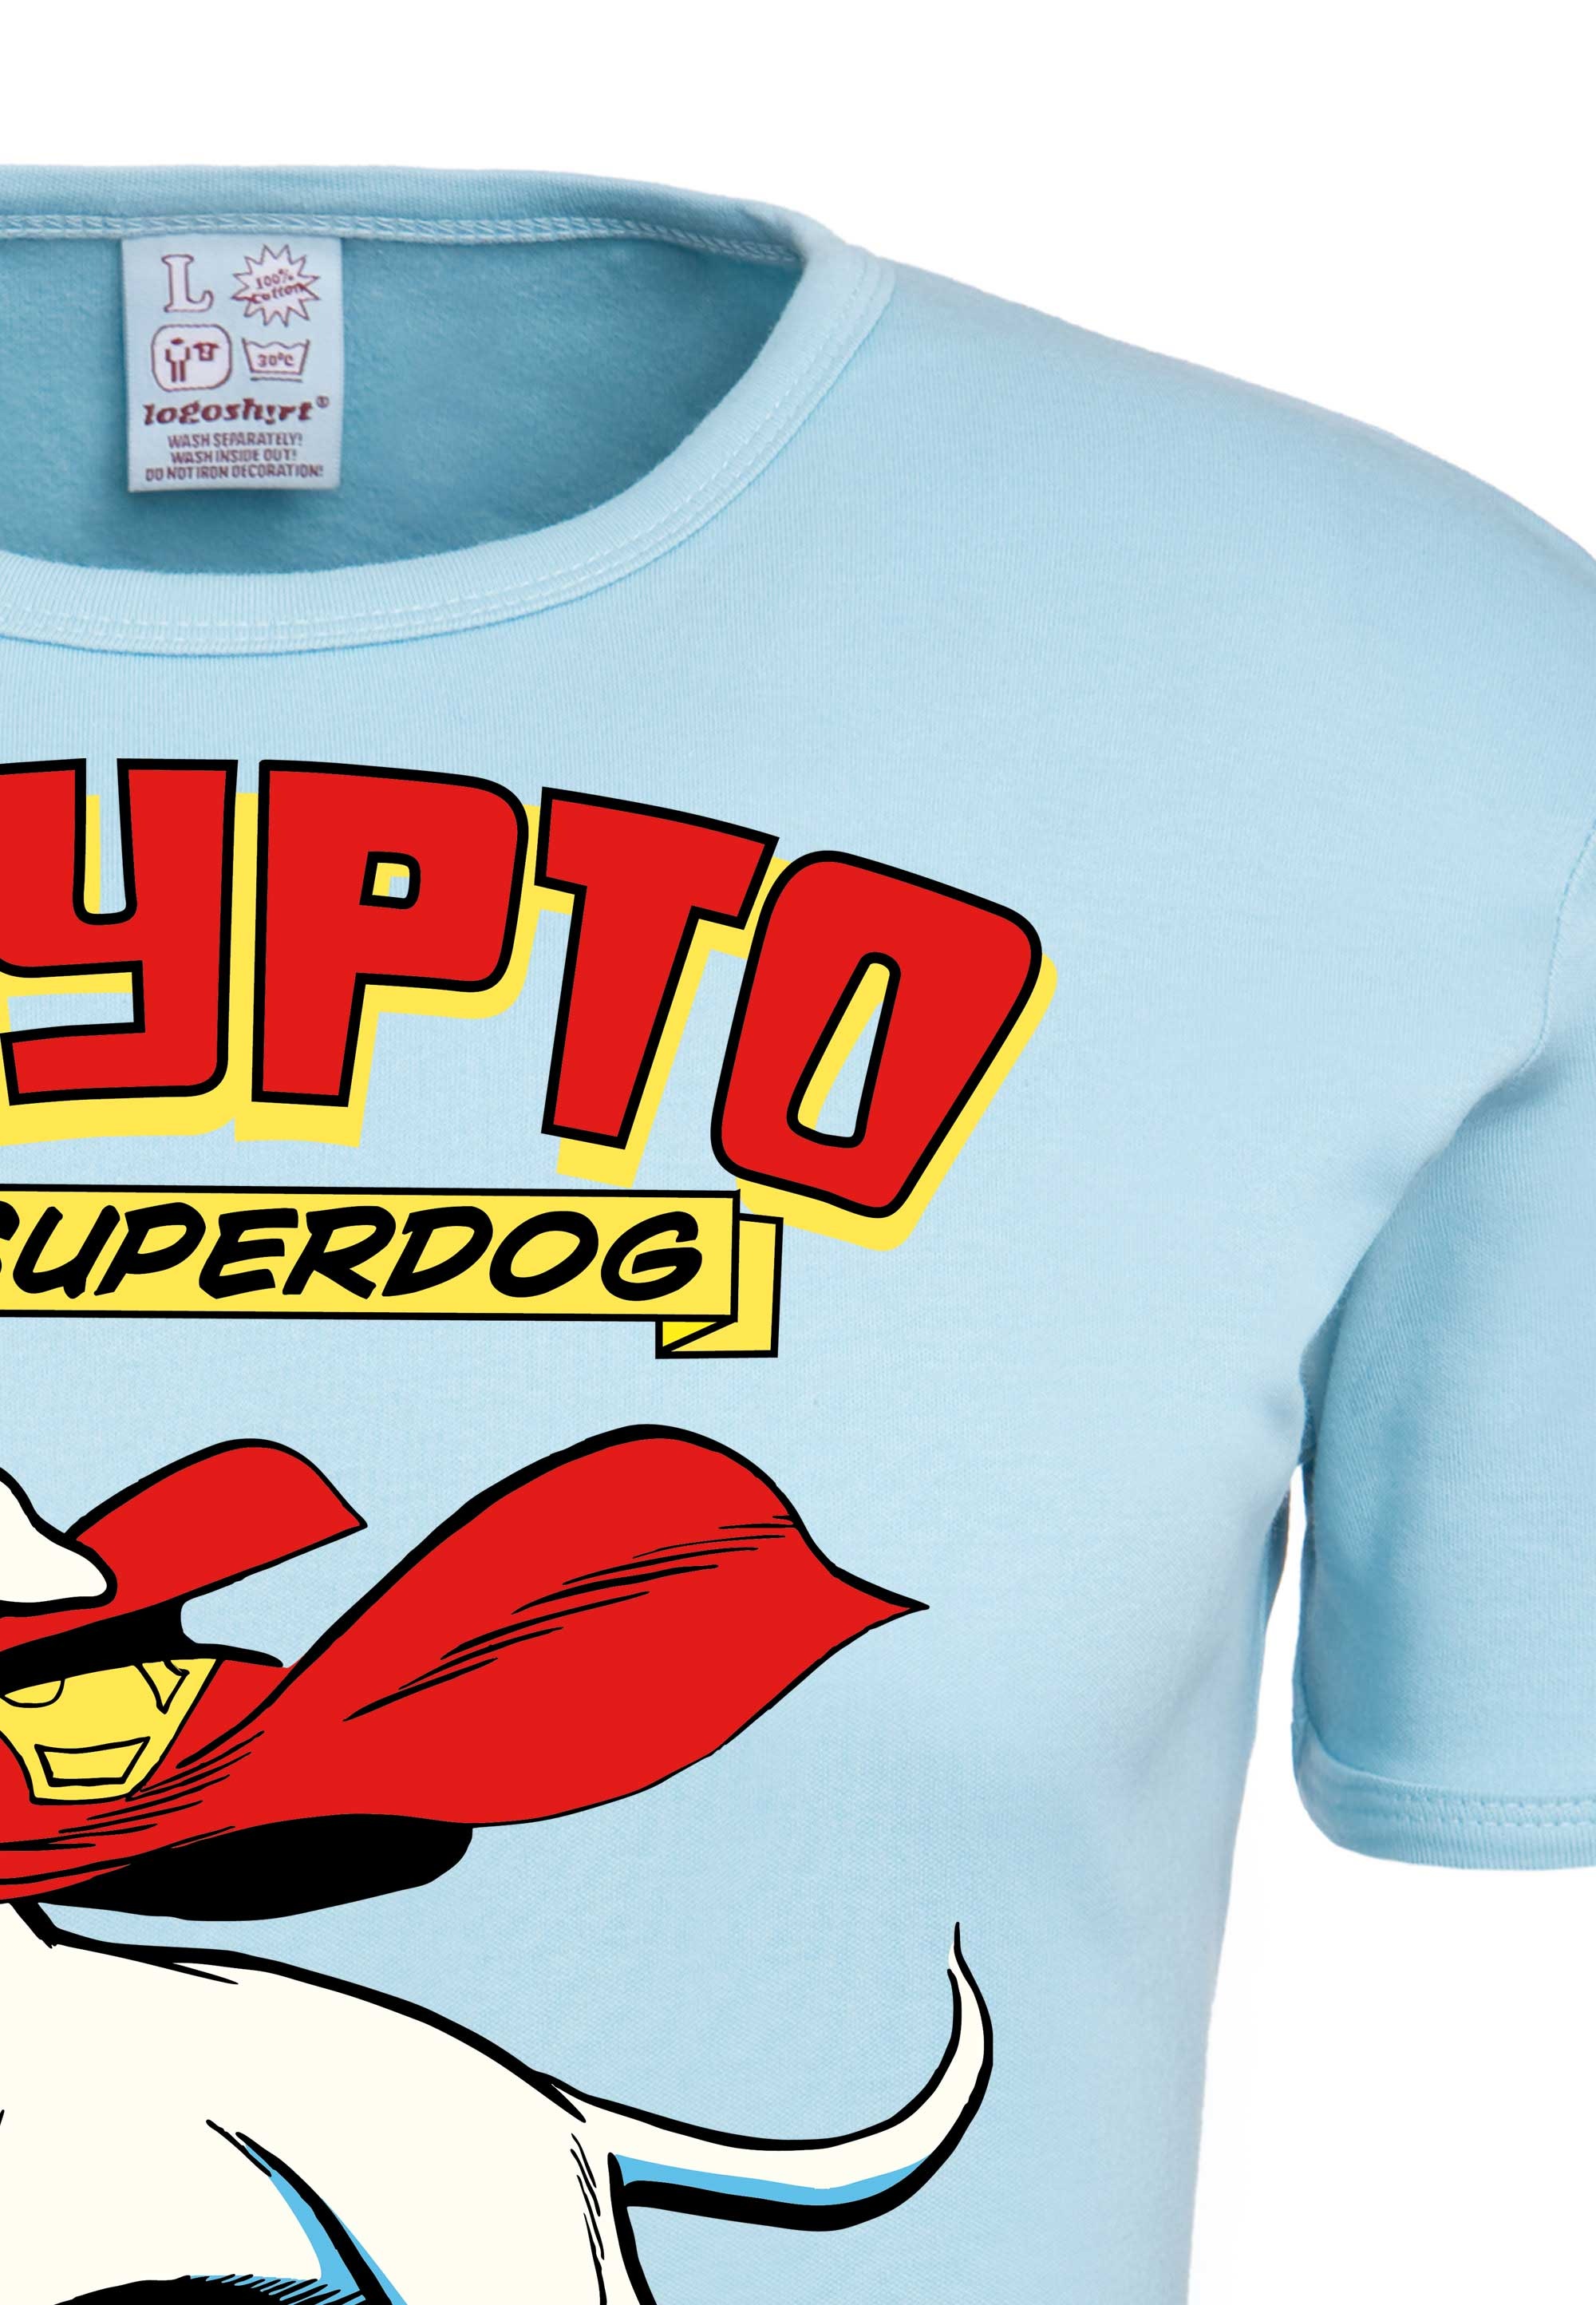 LOGOSHIRT T-Shirt »The Superdog«, mit rundem Ausschnitt